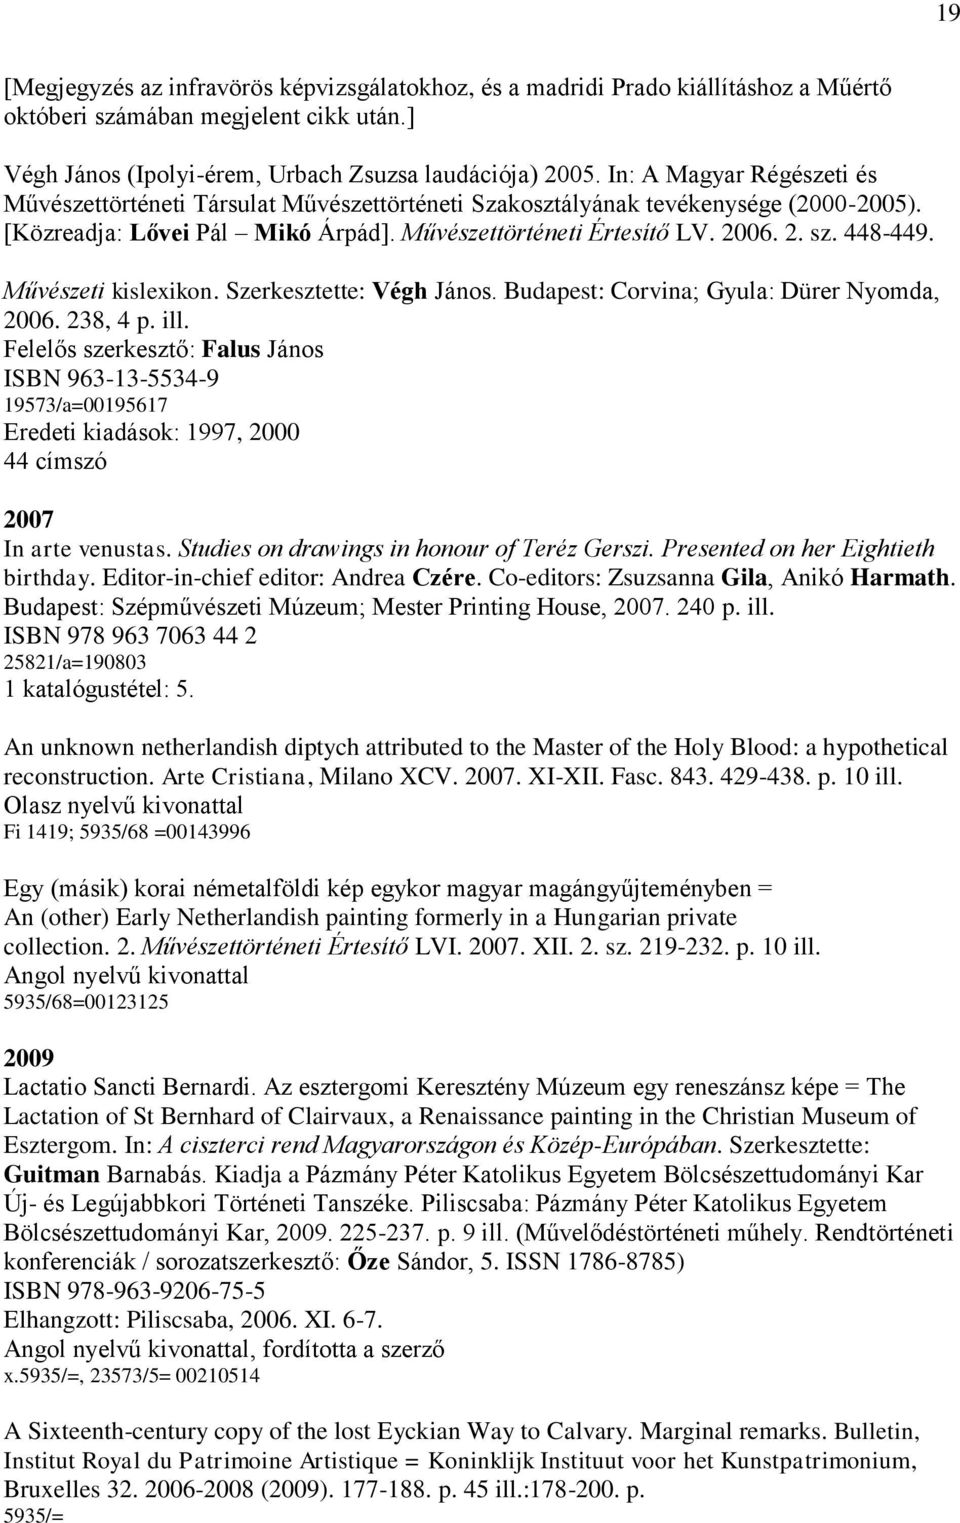 Művészeti kislexikon. Szerkesztette: Végh János. Budapest: Corvina; Gyula: Dürer Nyomda, 2006. 238, 4 p. ill.